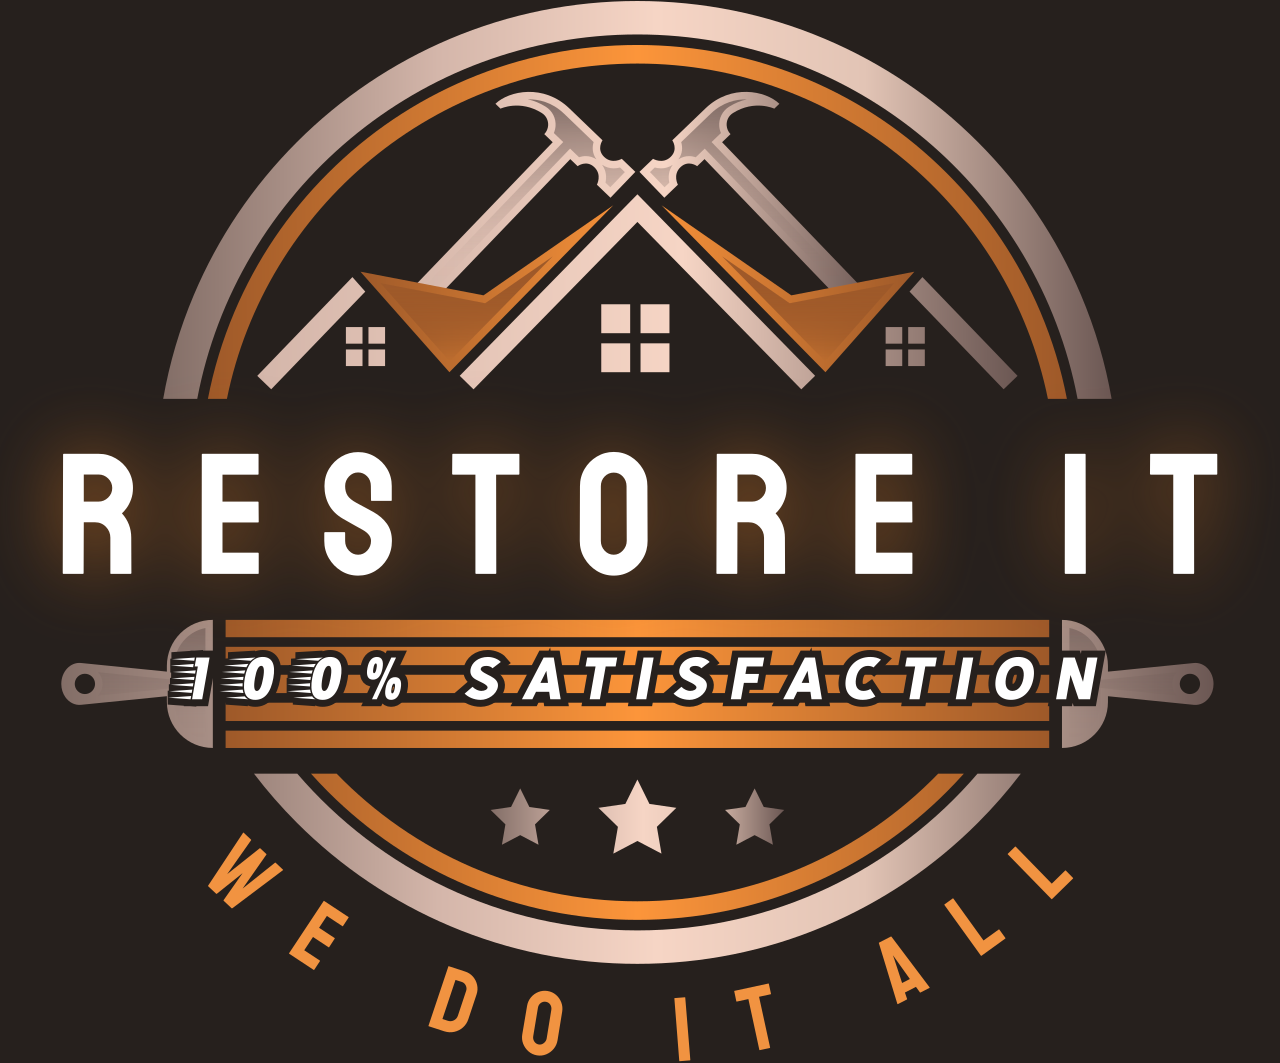 Restore iT's logo